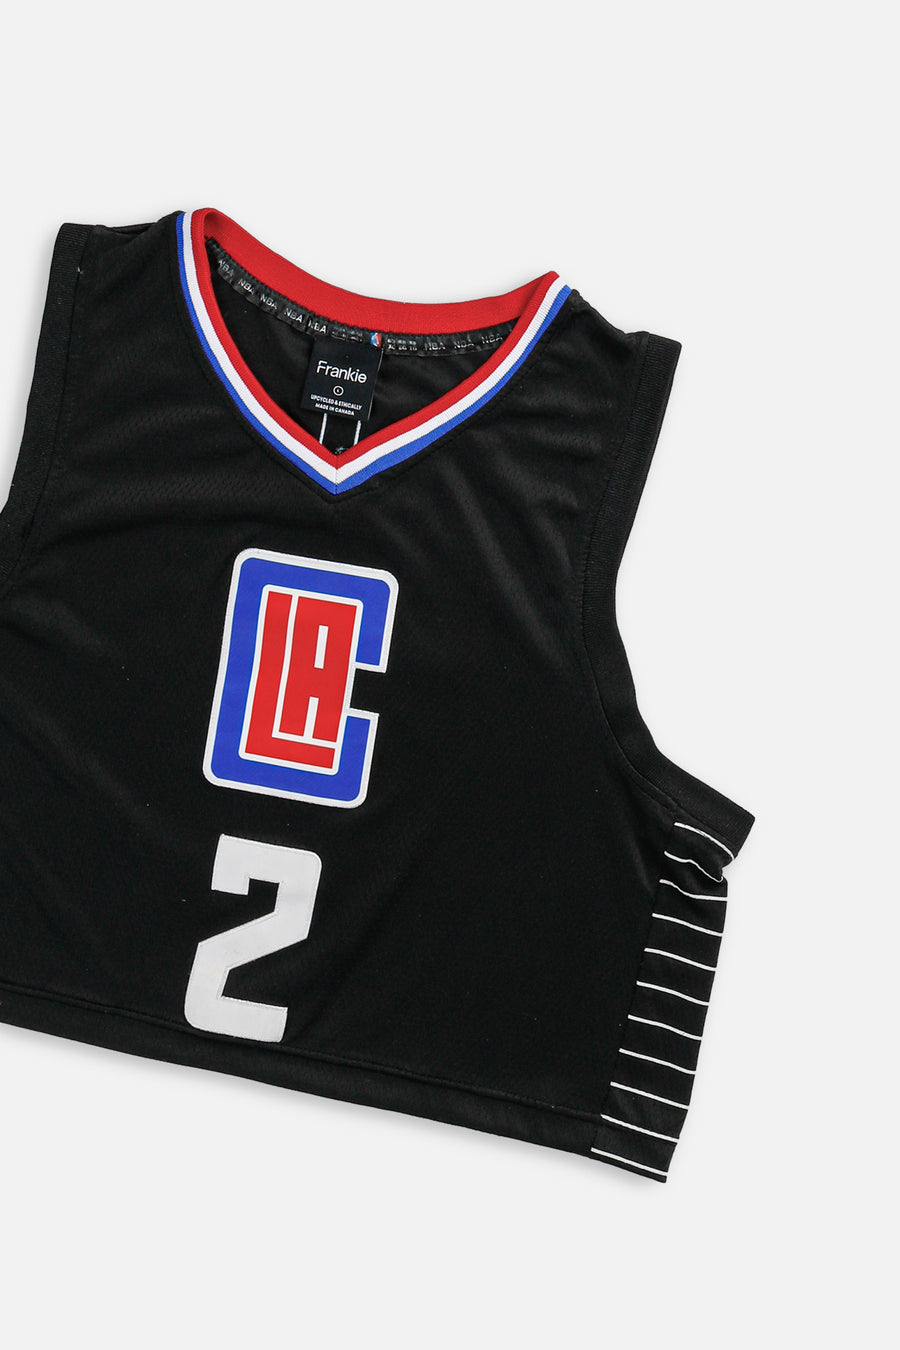 Rework LA Clippers NBA Crop Jersey - L